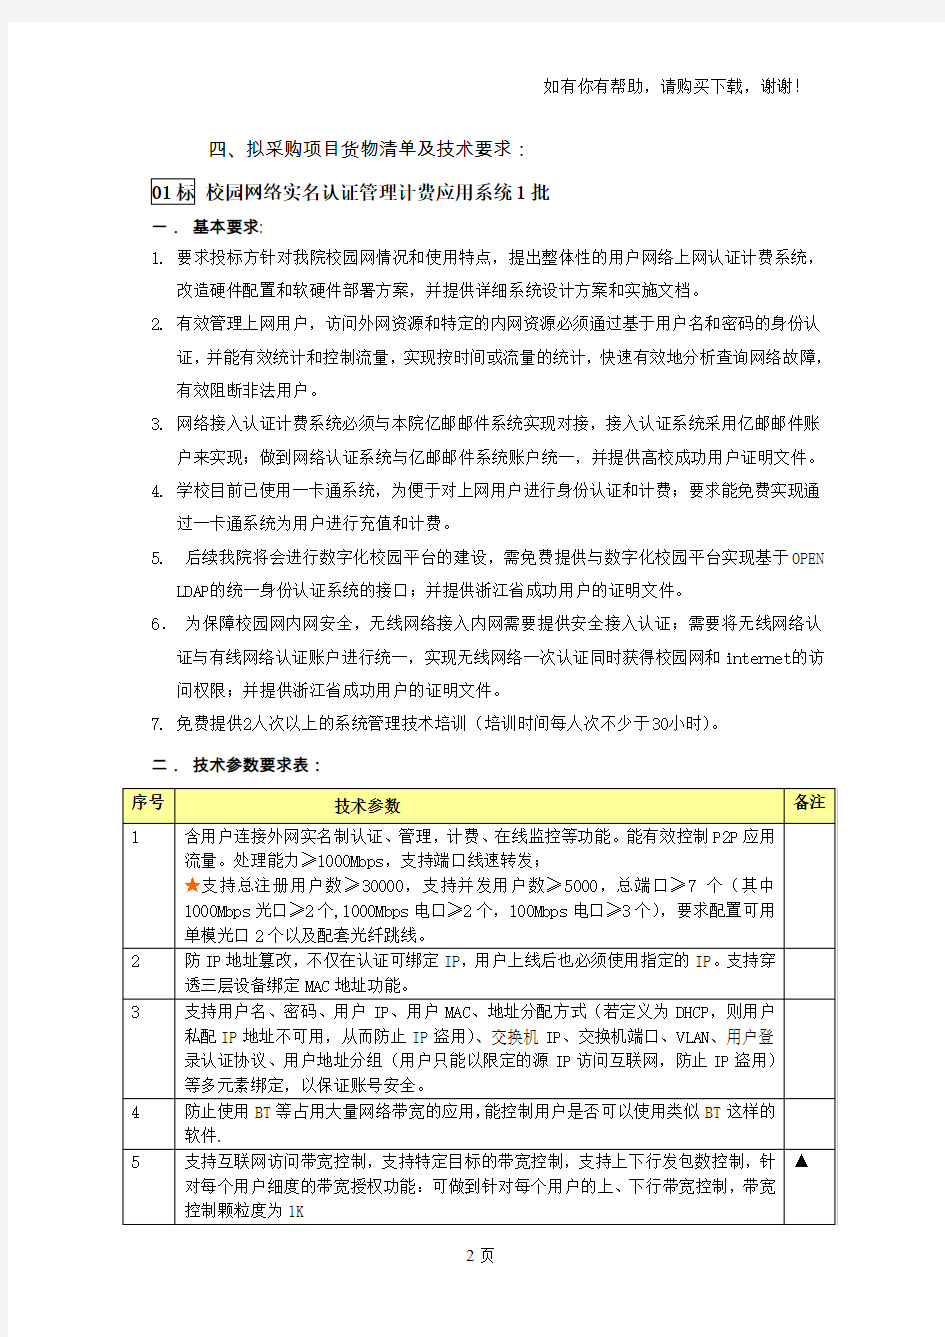 浙江工业职业技术学院信息化建设项目征求意见